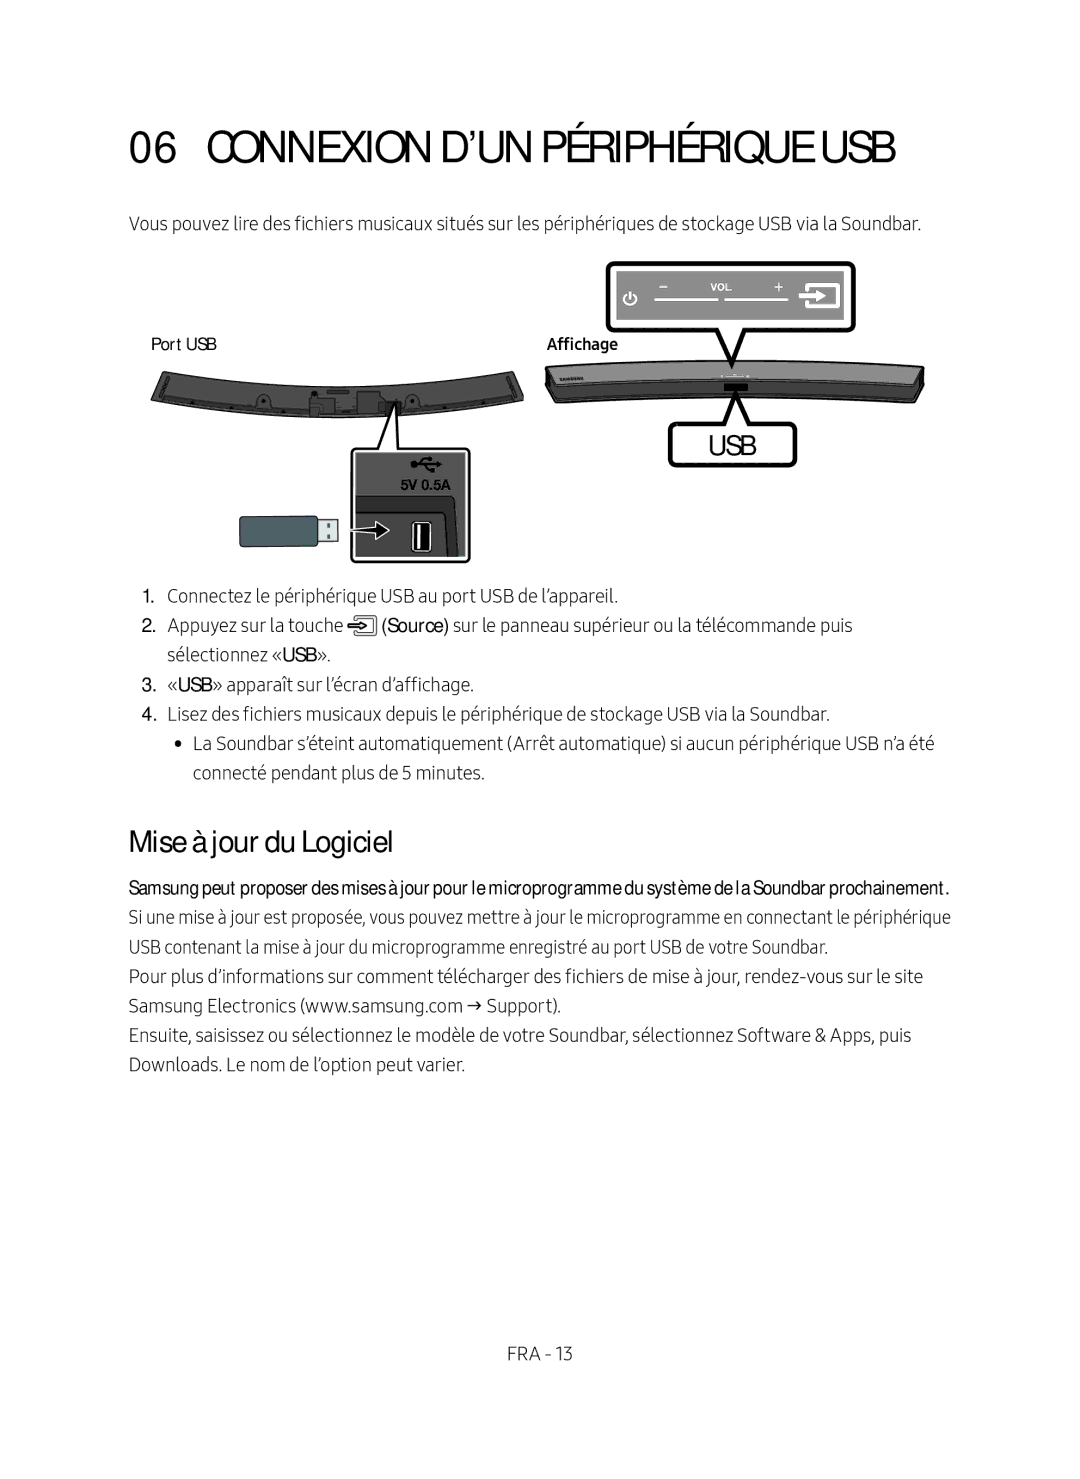 Samsung HW-M4500/EN manual Connexion d’un Périphérique USB, Mise à jour du Logiciel, Port USB 